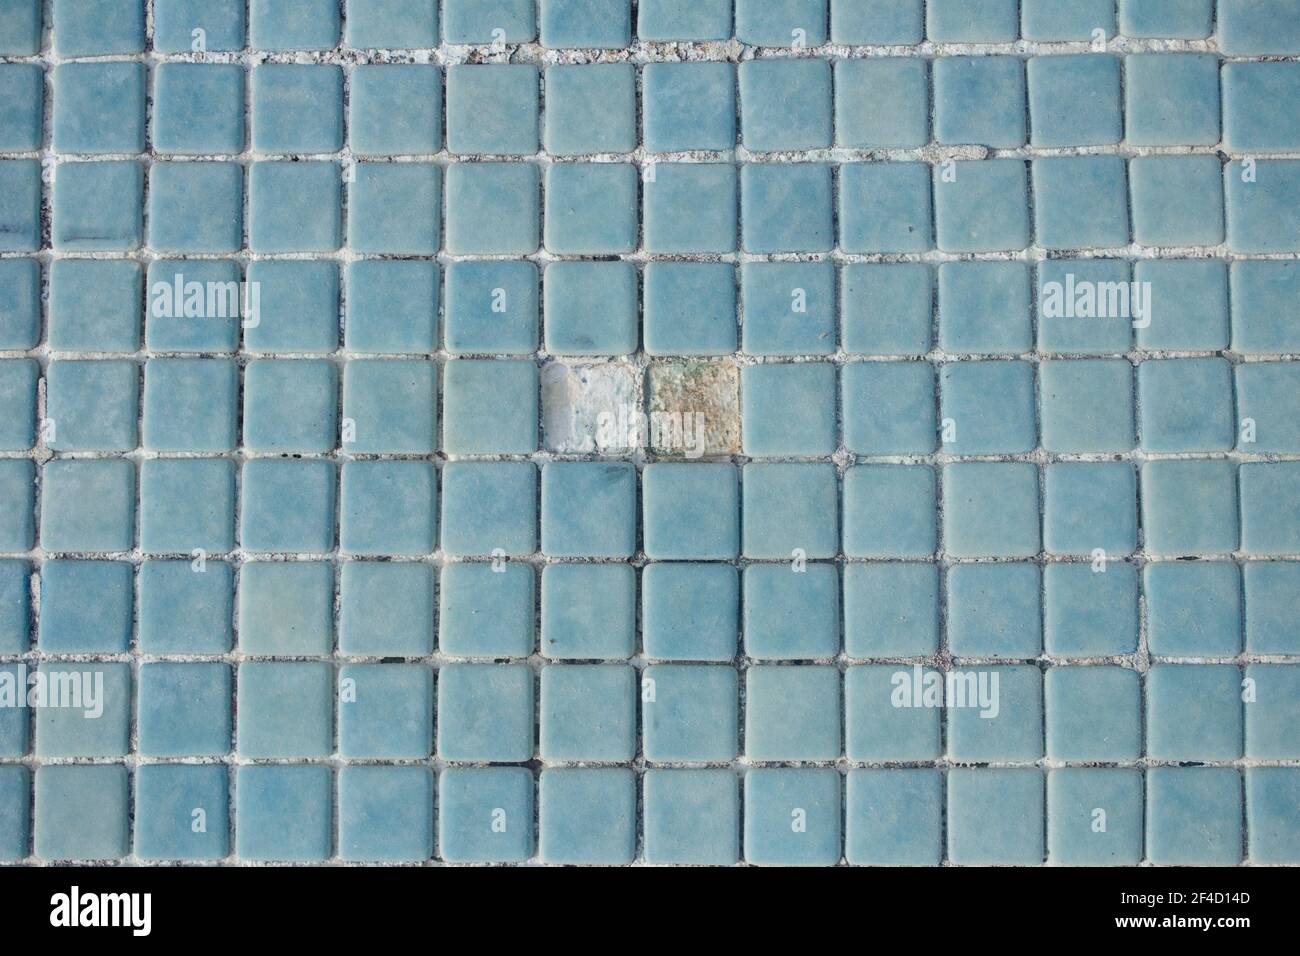 Zwei Löcher zusammen auf dem leeren Poolboden. Steinzeug Swimmingpool Boden, in dem zwei blaue Fliesen fehlen. Stockfoto